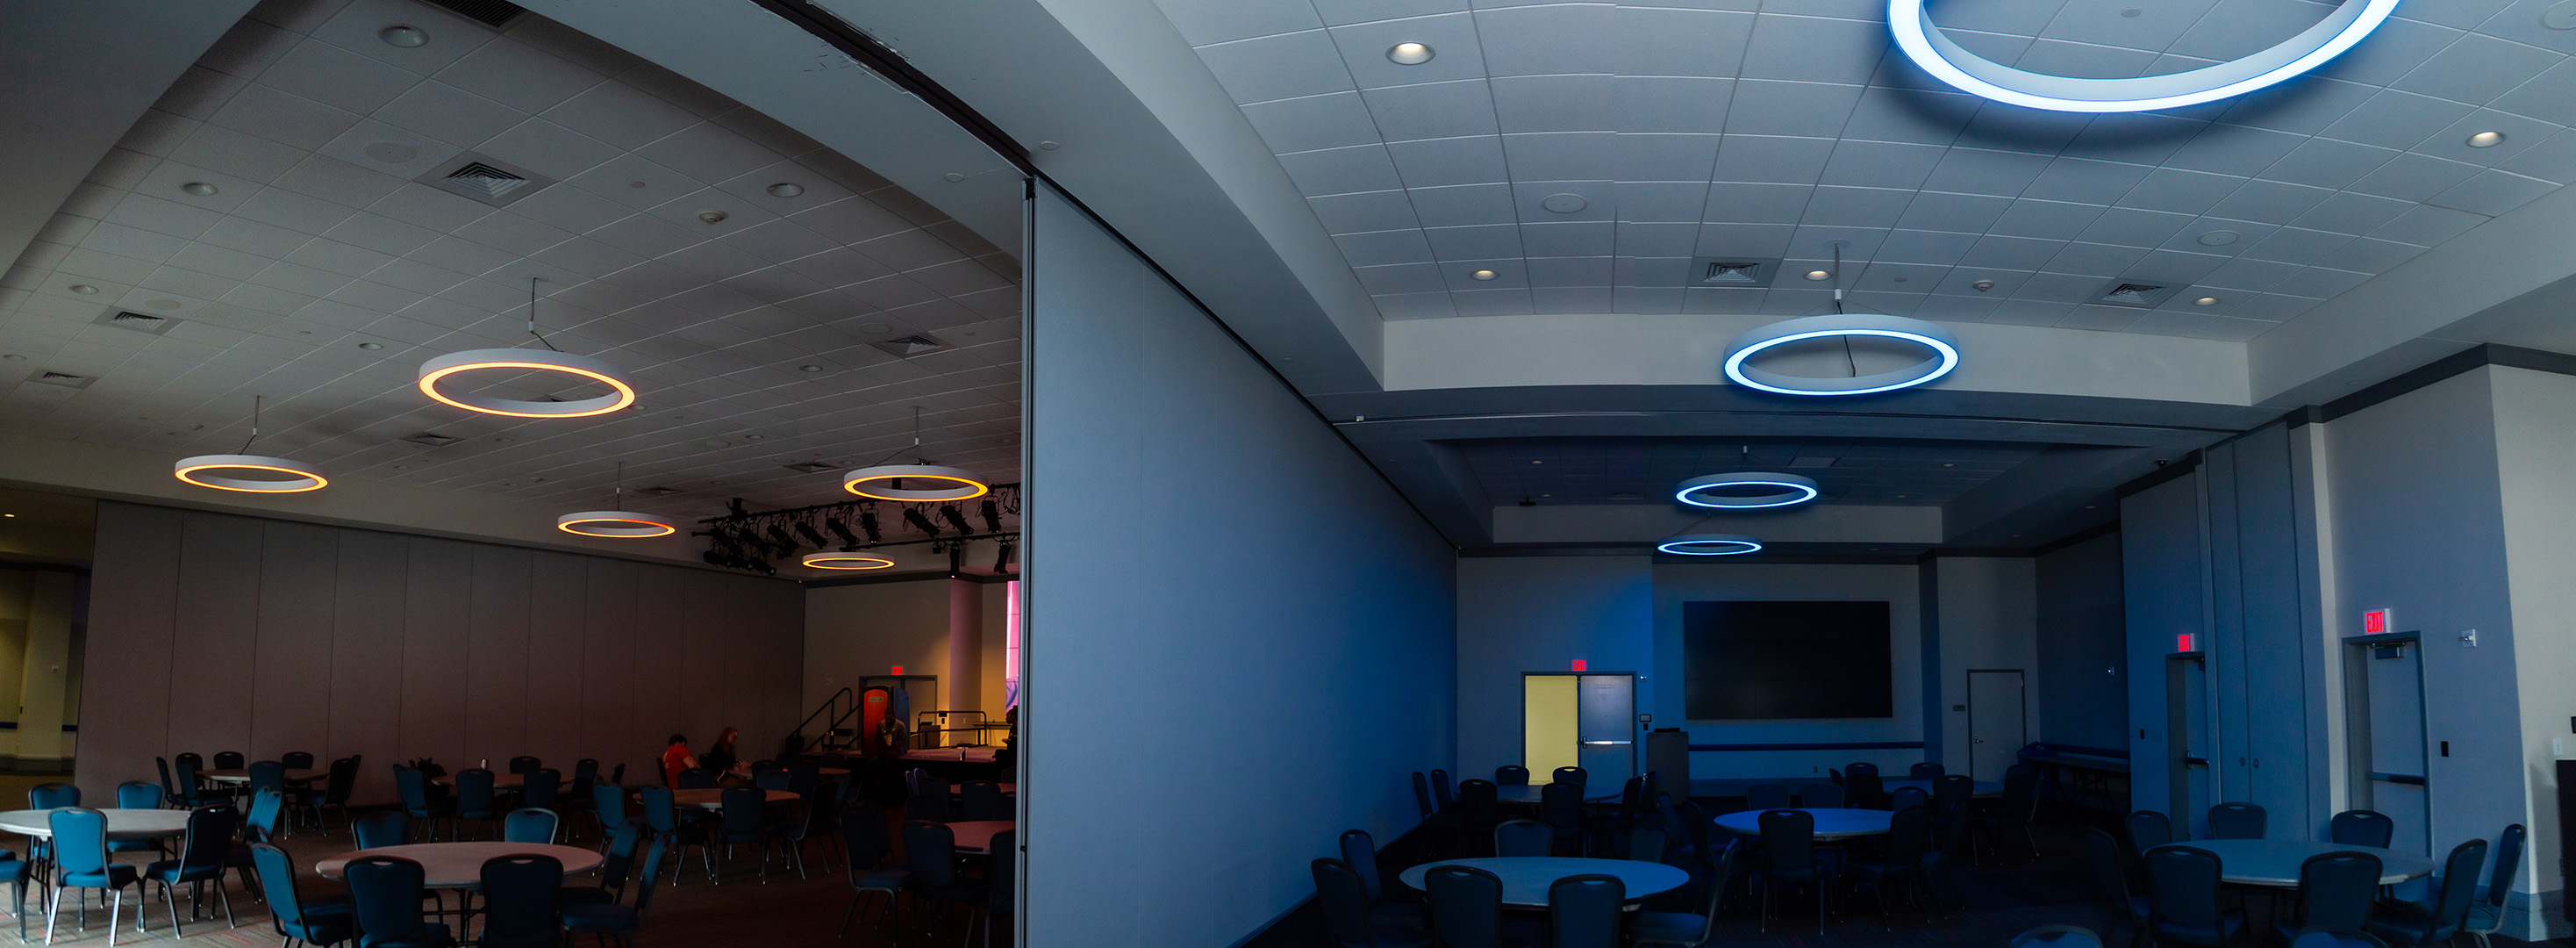 Ballroom 108.3 and 108.4 displaying colored lighting capabilities